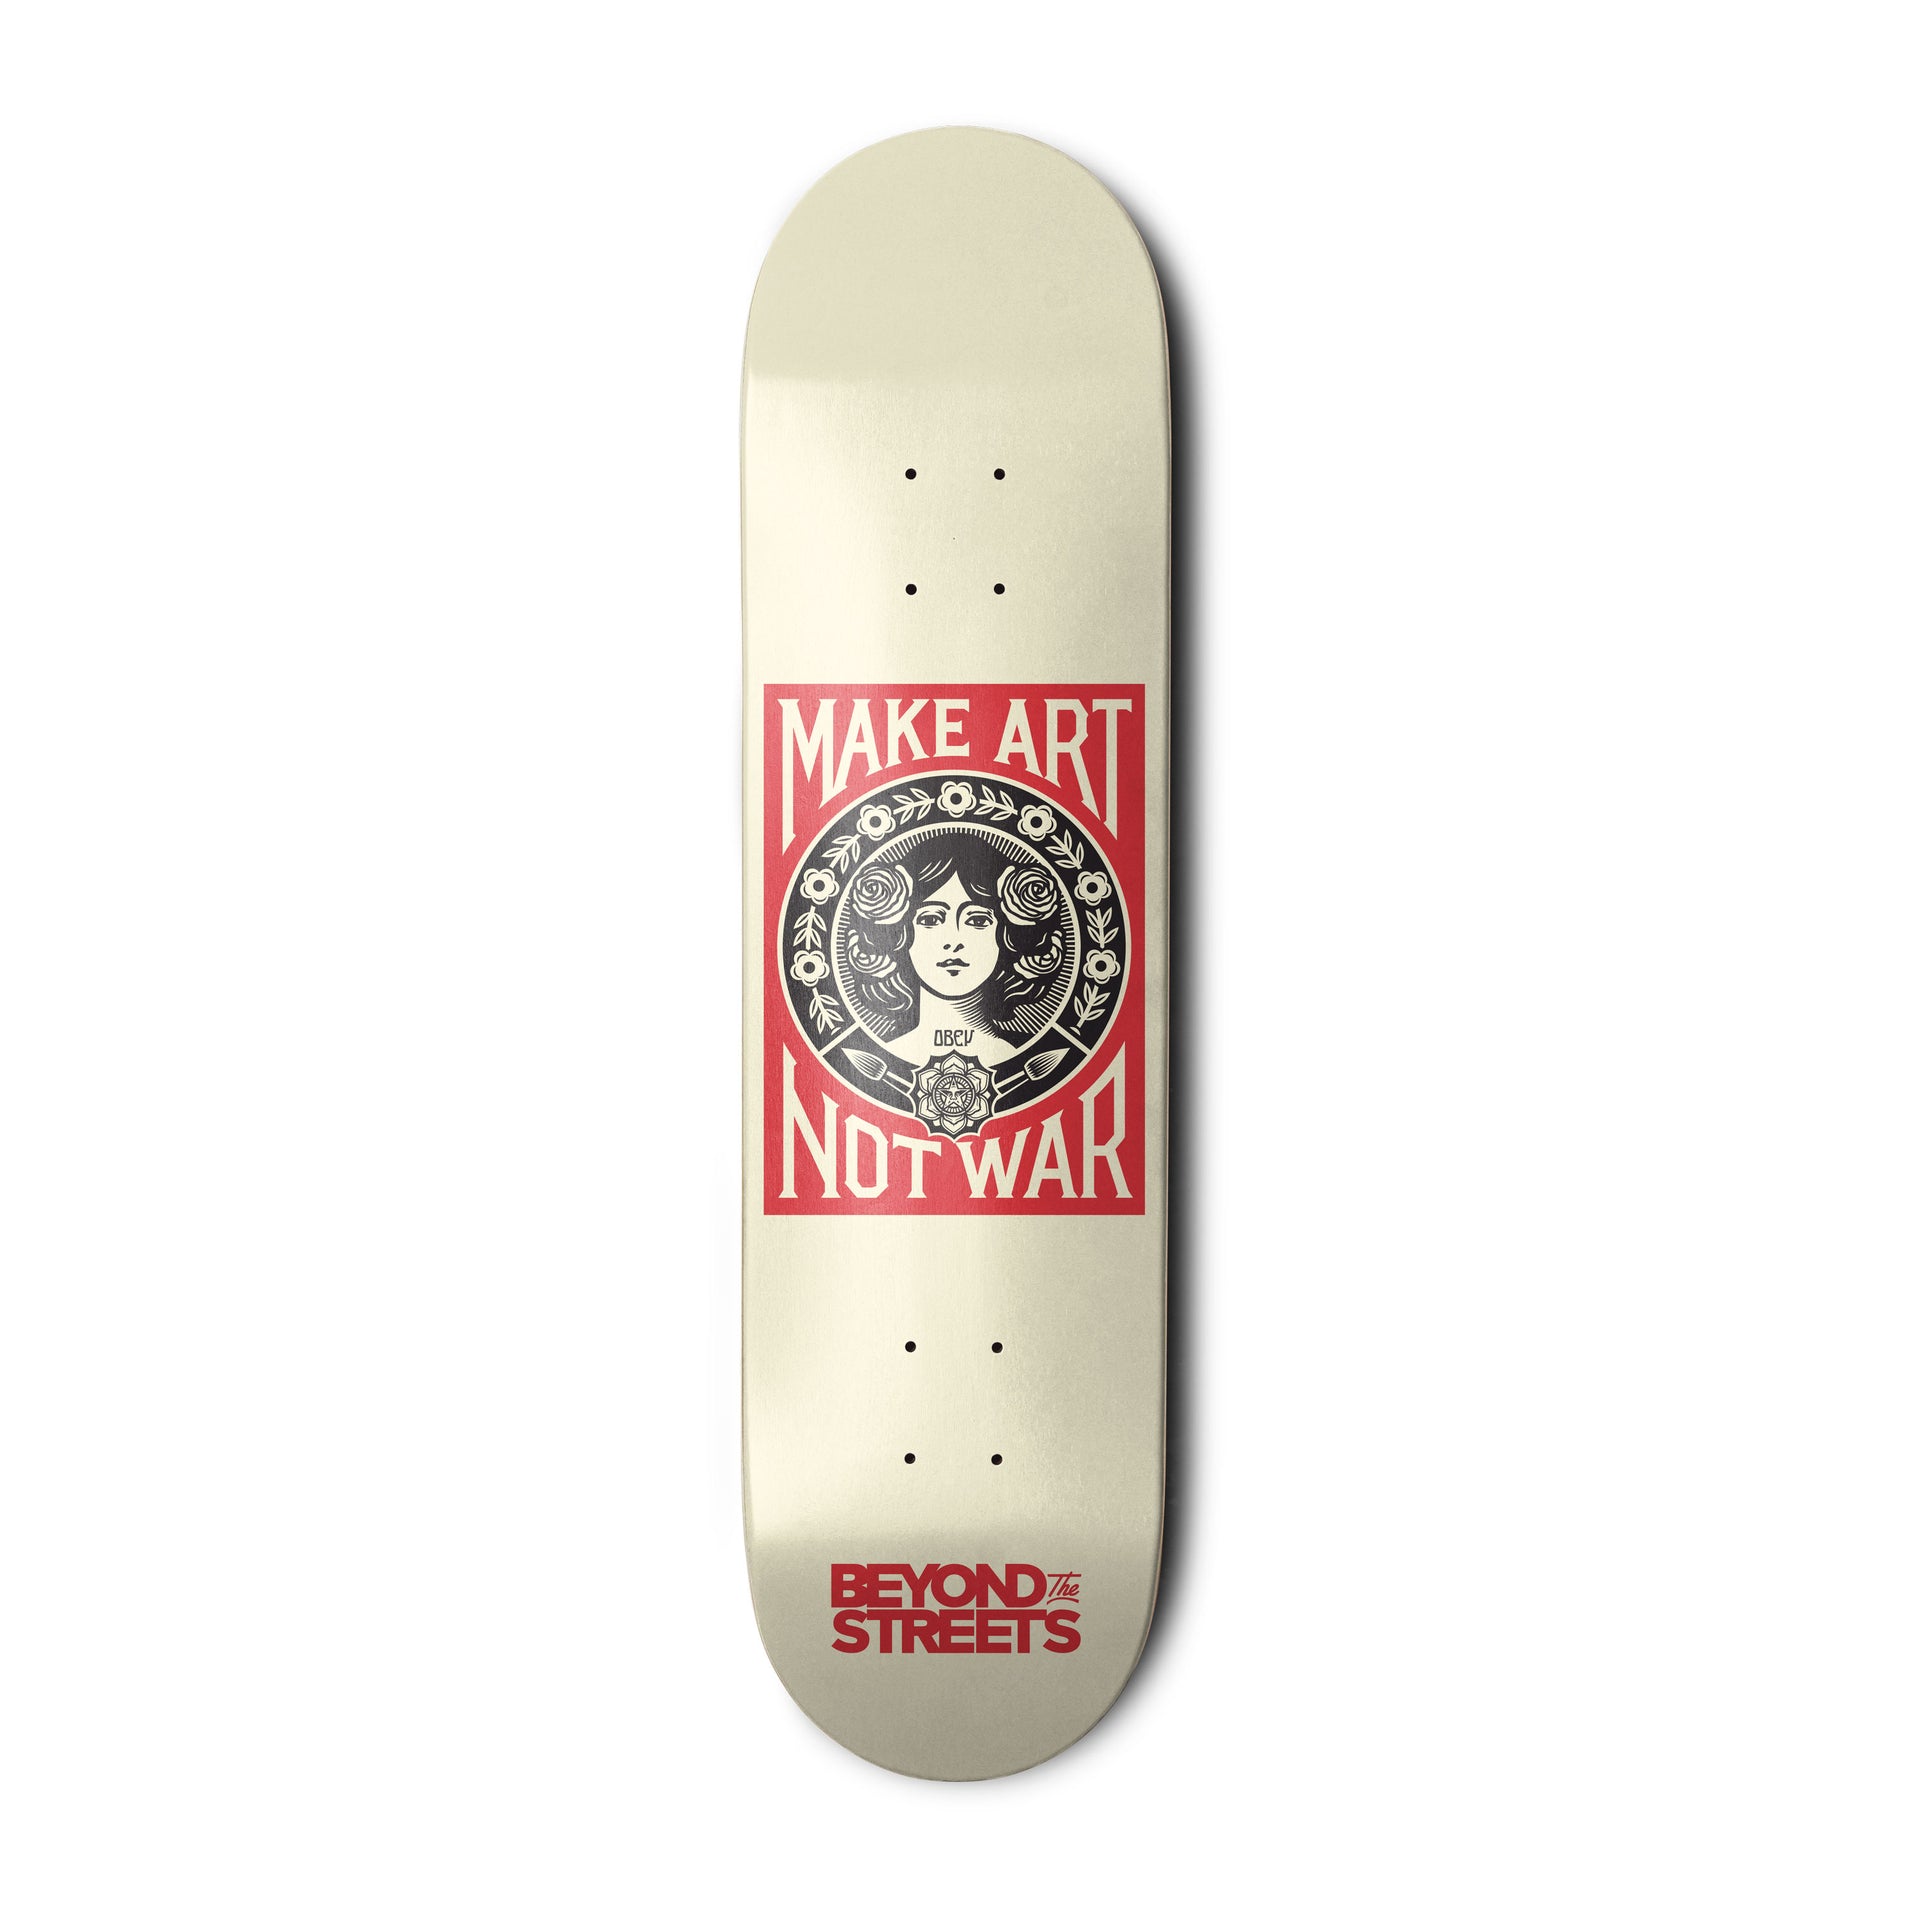 Shepard Fairey "Make Art Not War" Skate Deck